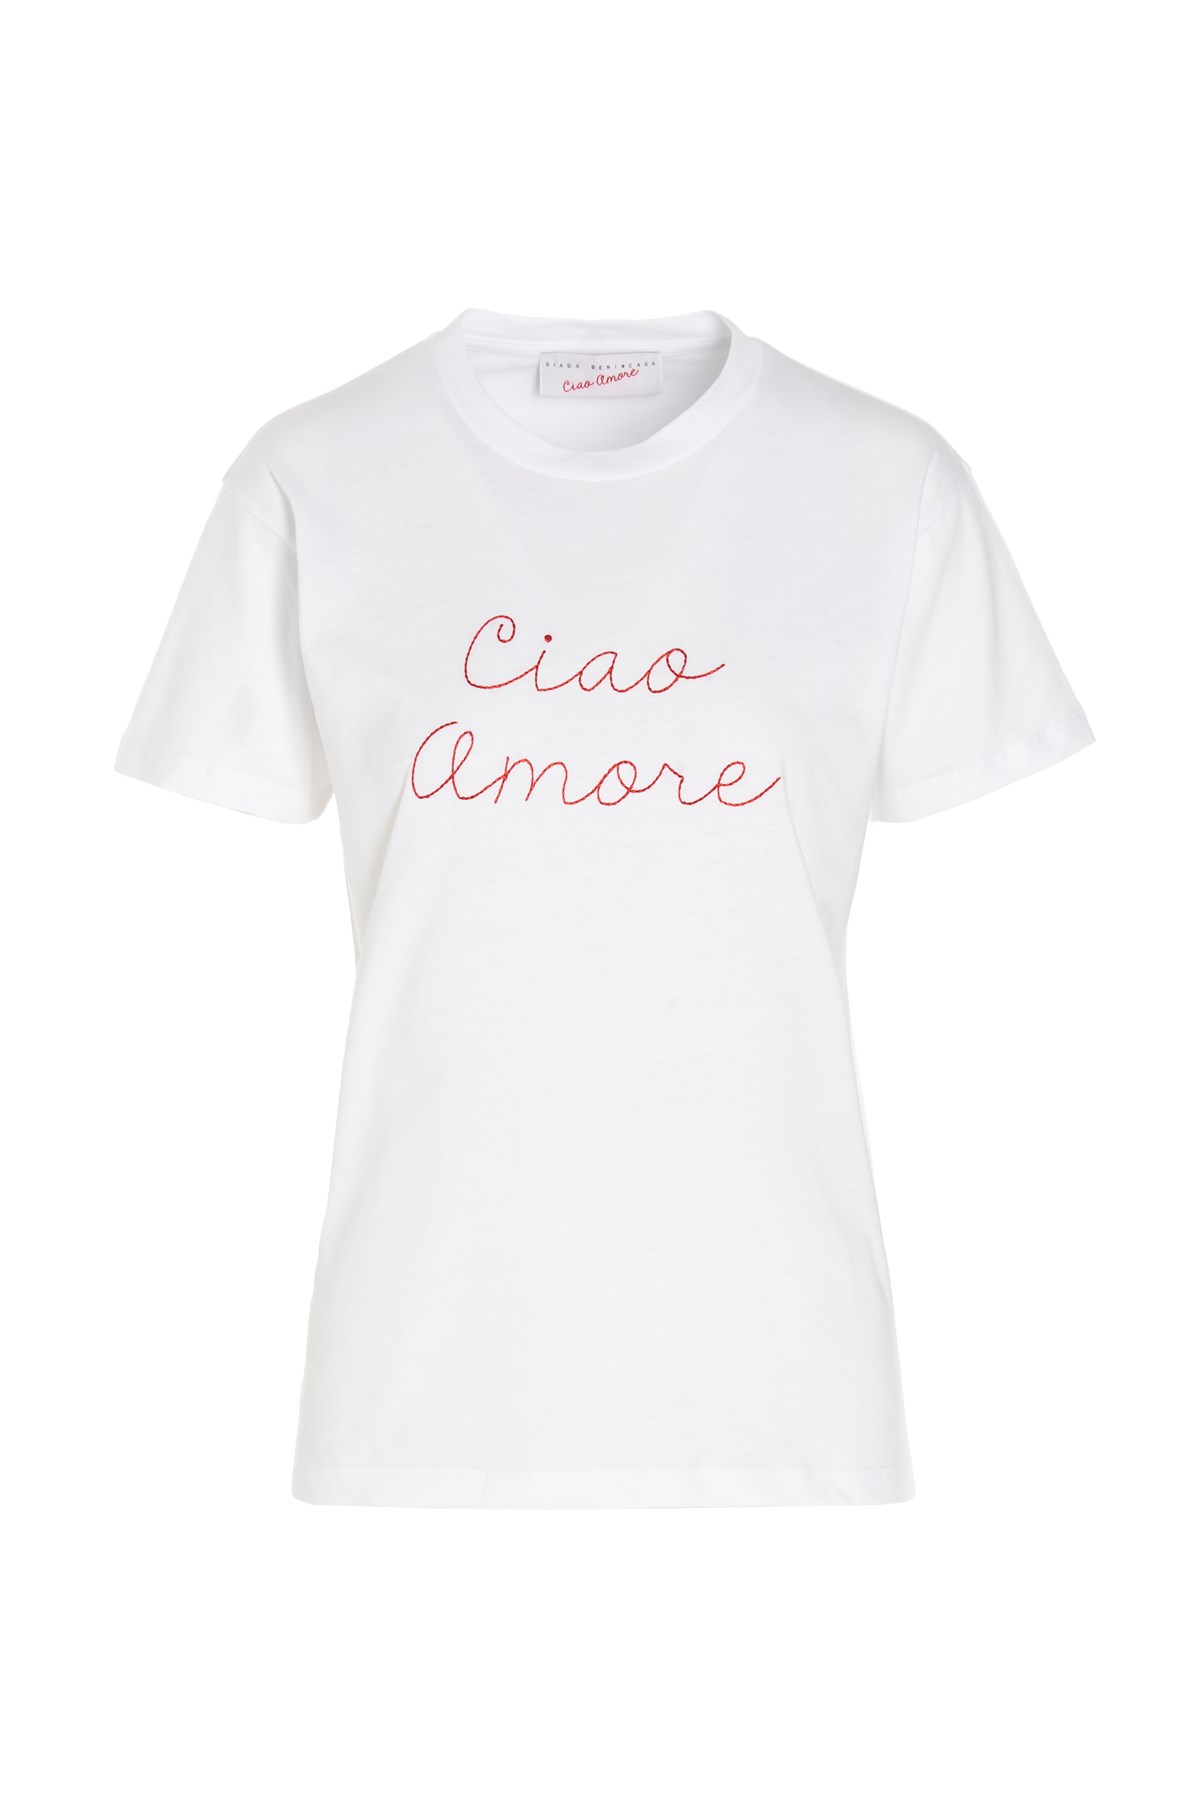 GIADA BENINCASA 'Ciao Amore’ T-Shirt